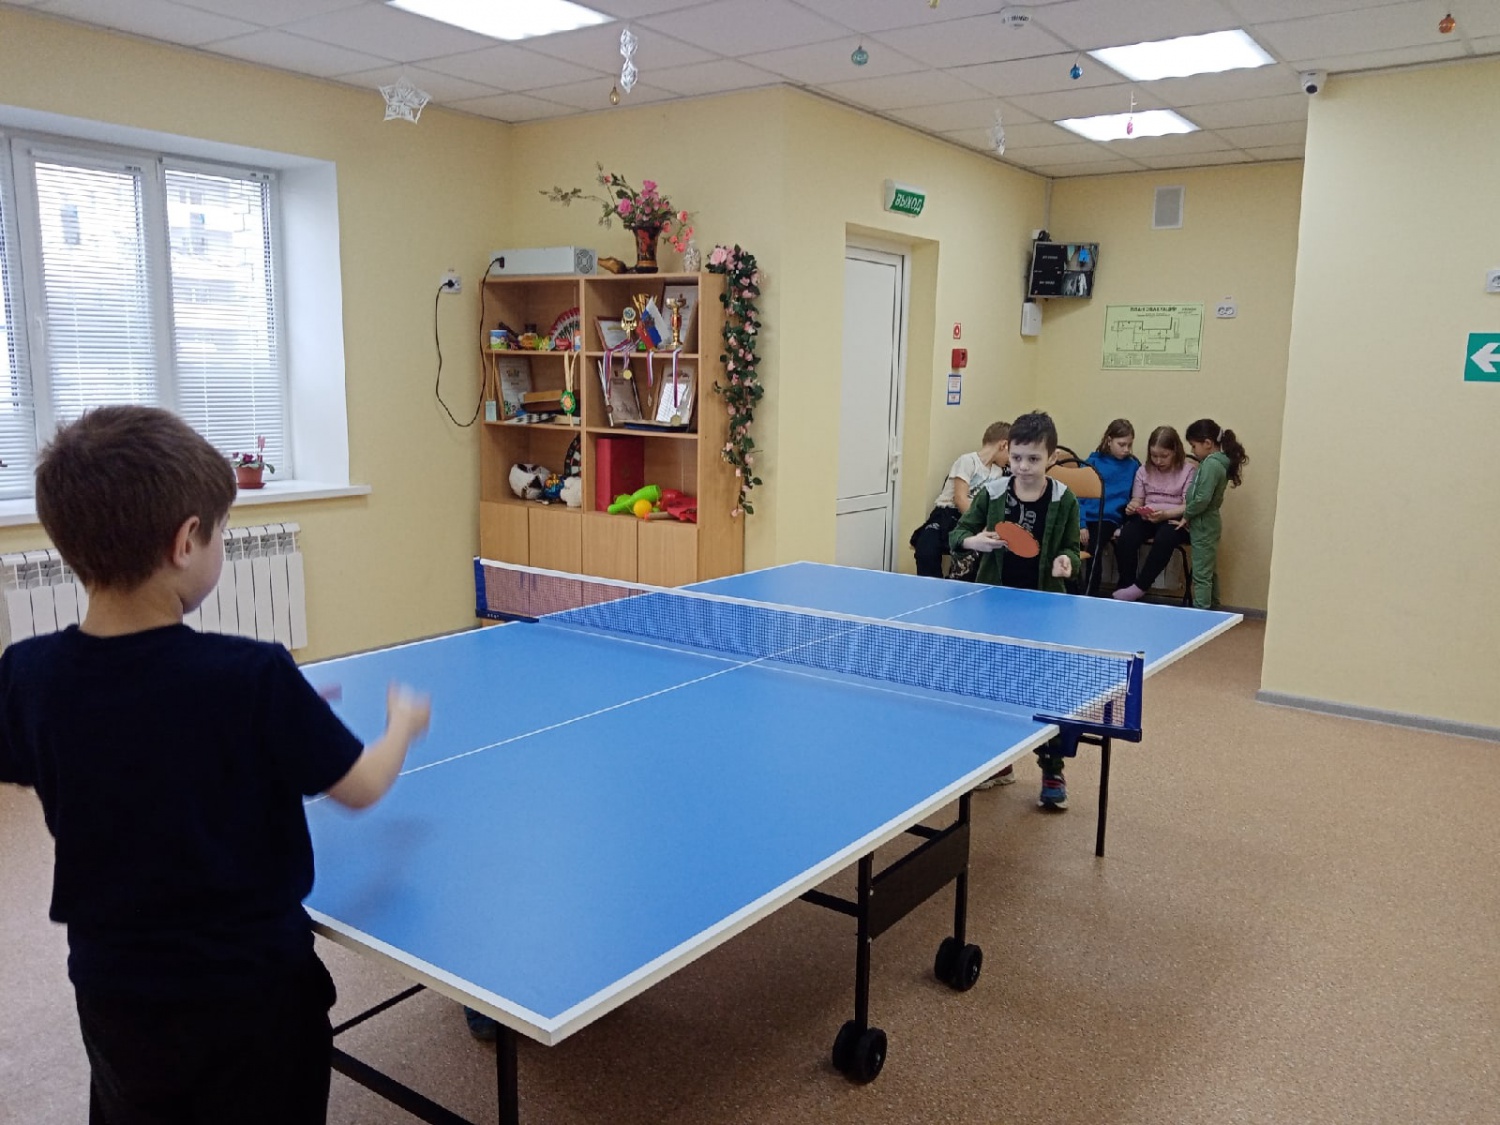 ГК Монострой приобрела теннисный стол для детского досугового центра в Юрьевце.